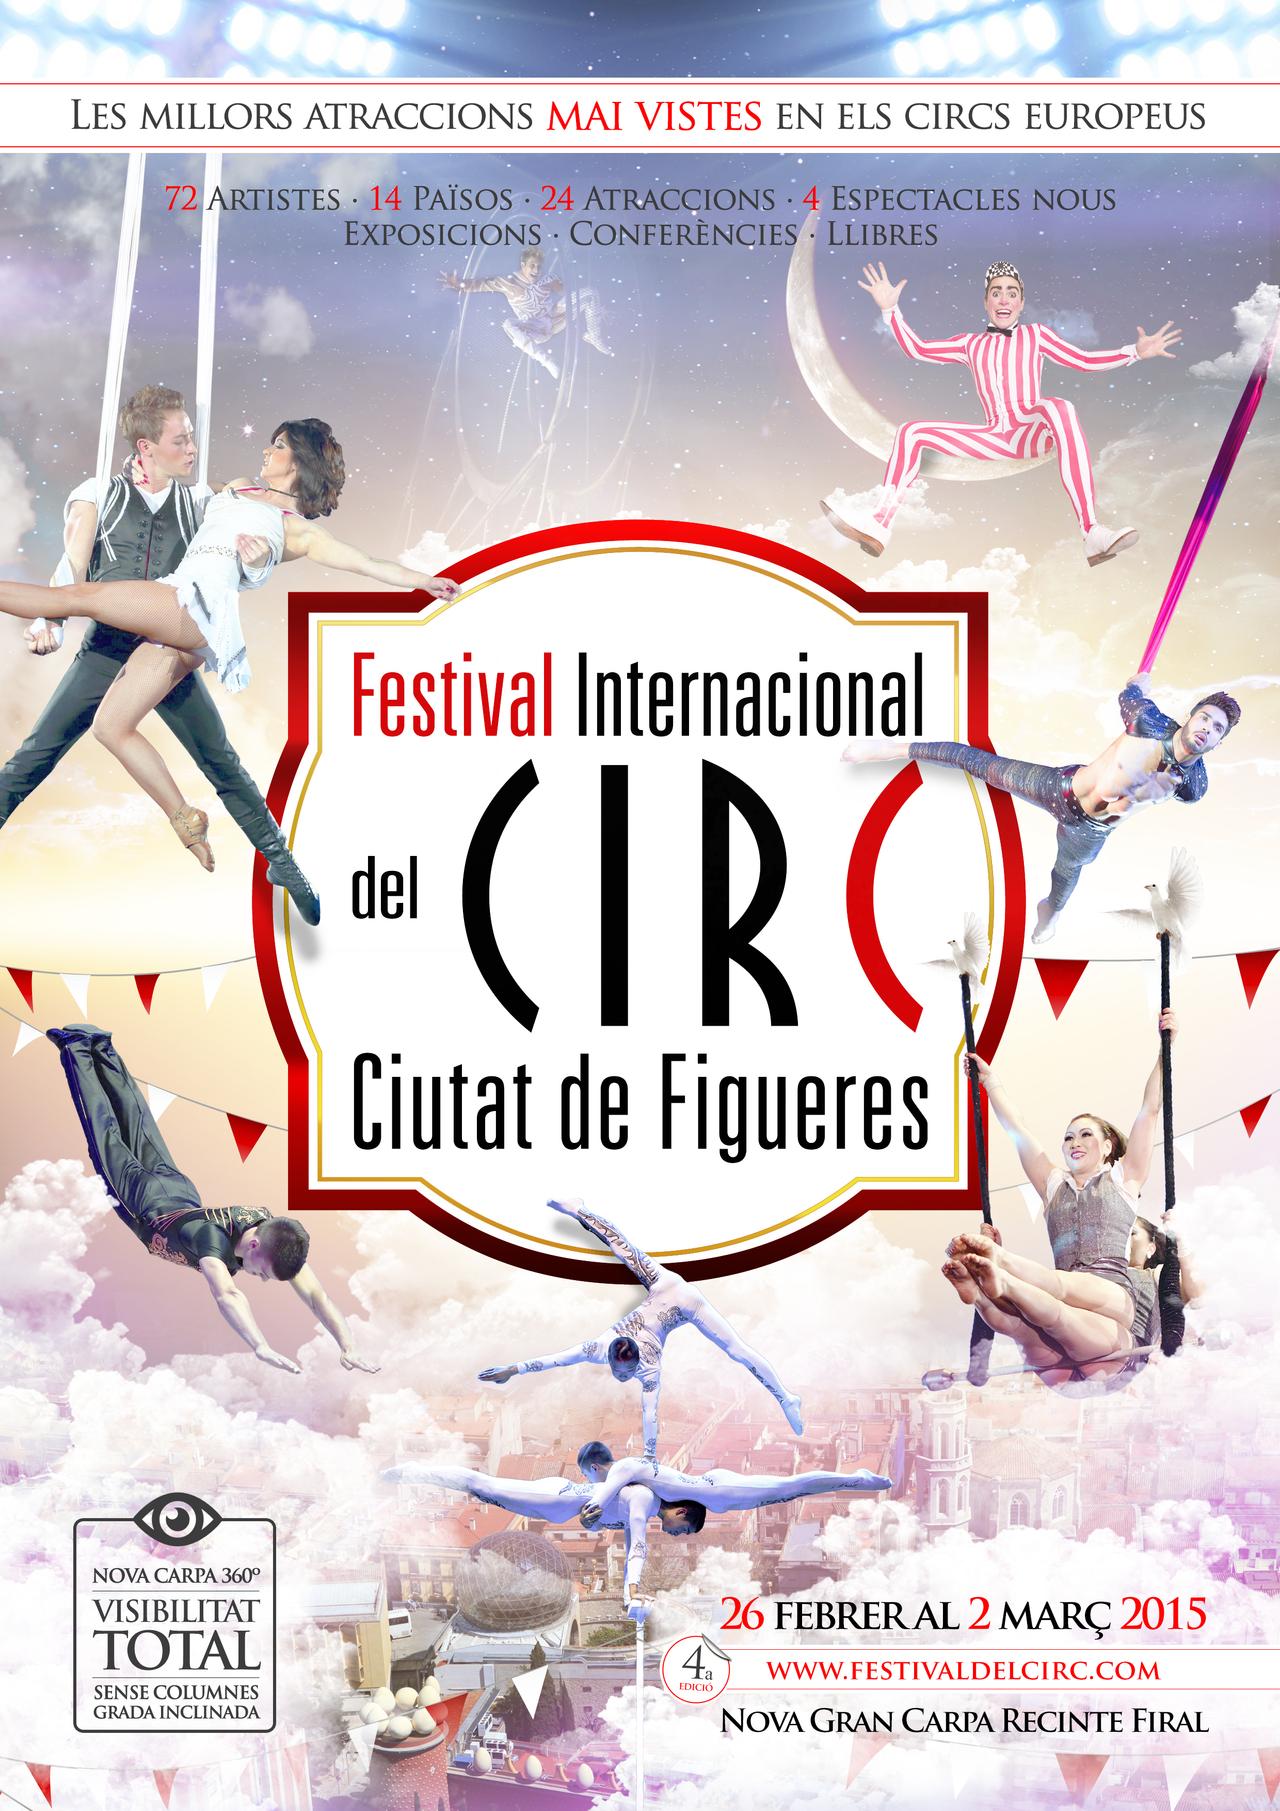 4º Festival Internacional Circo Ciutat de Figueres